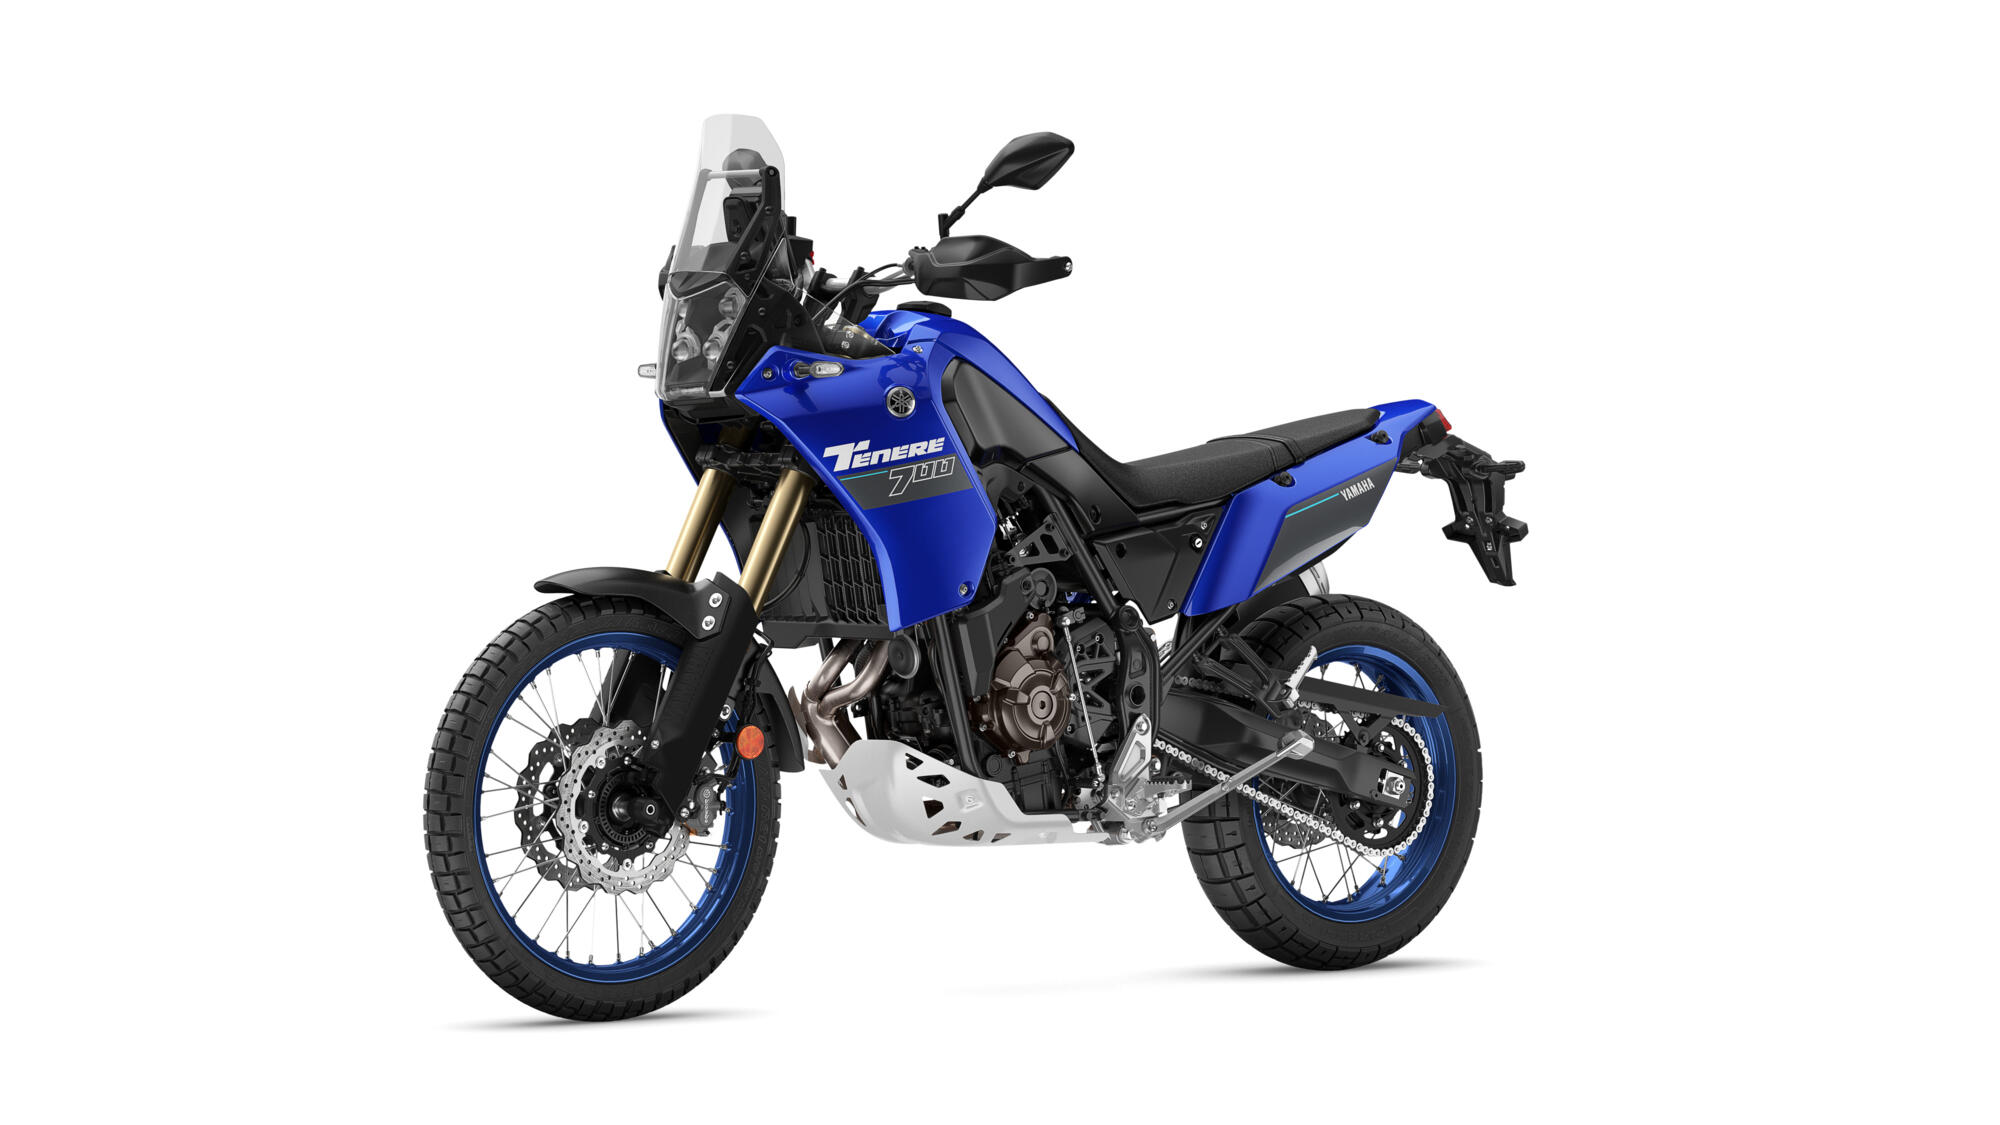 Ténéré 700 35kW - Motorcycles - Yamaha Motor